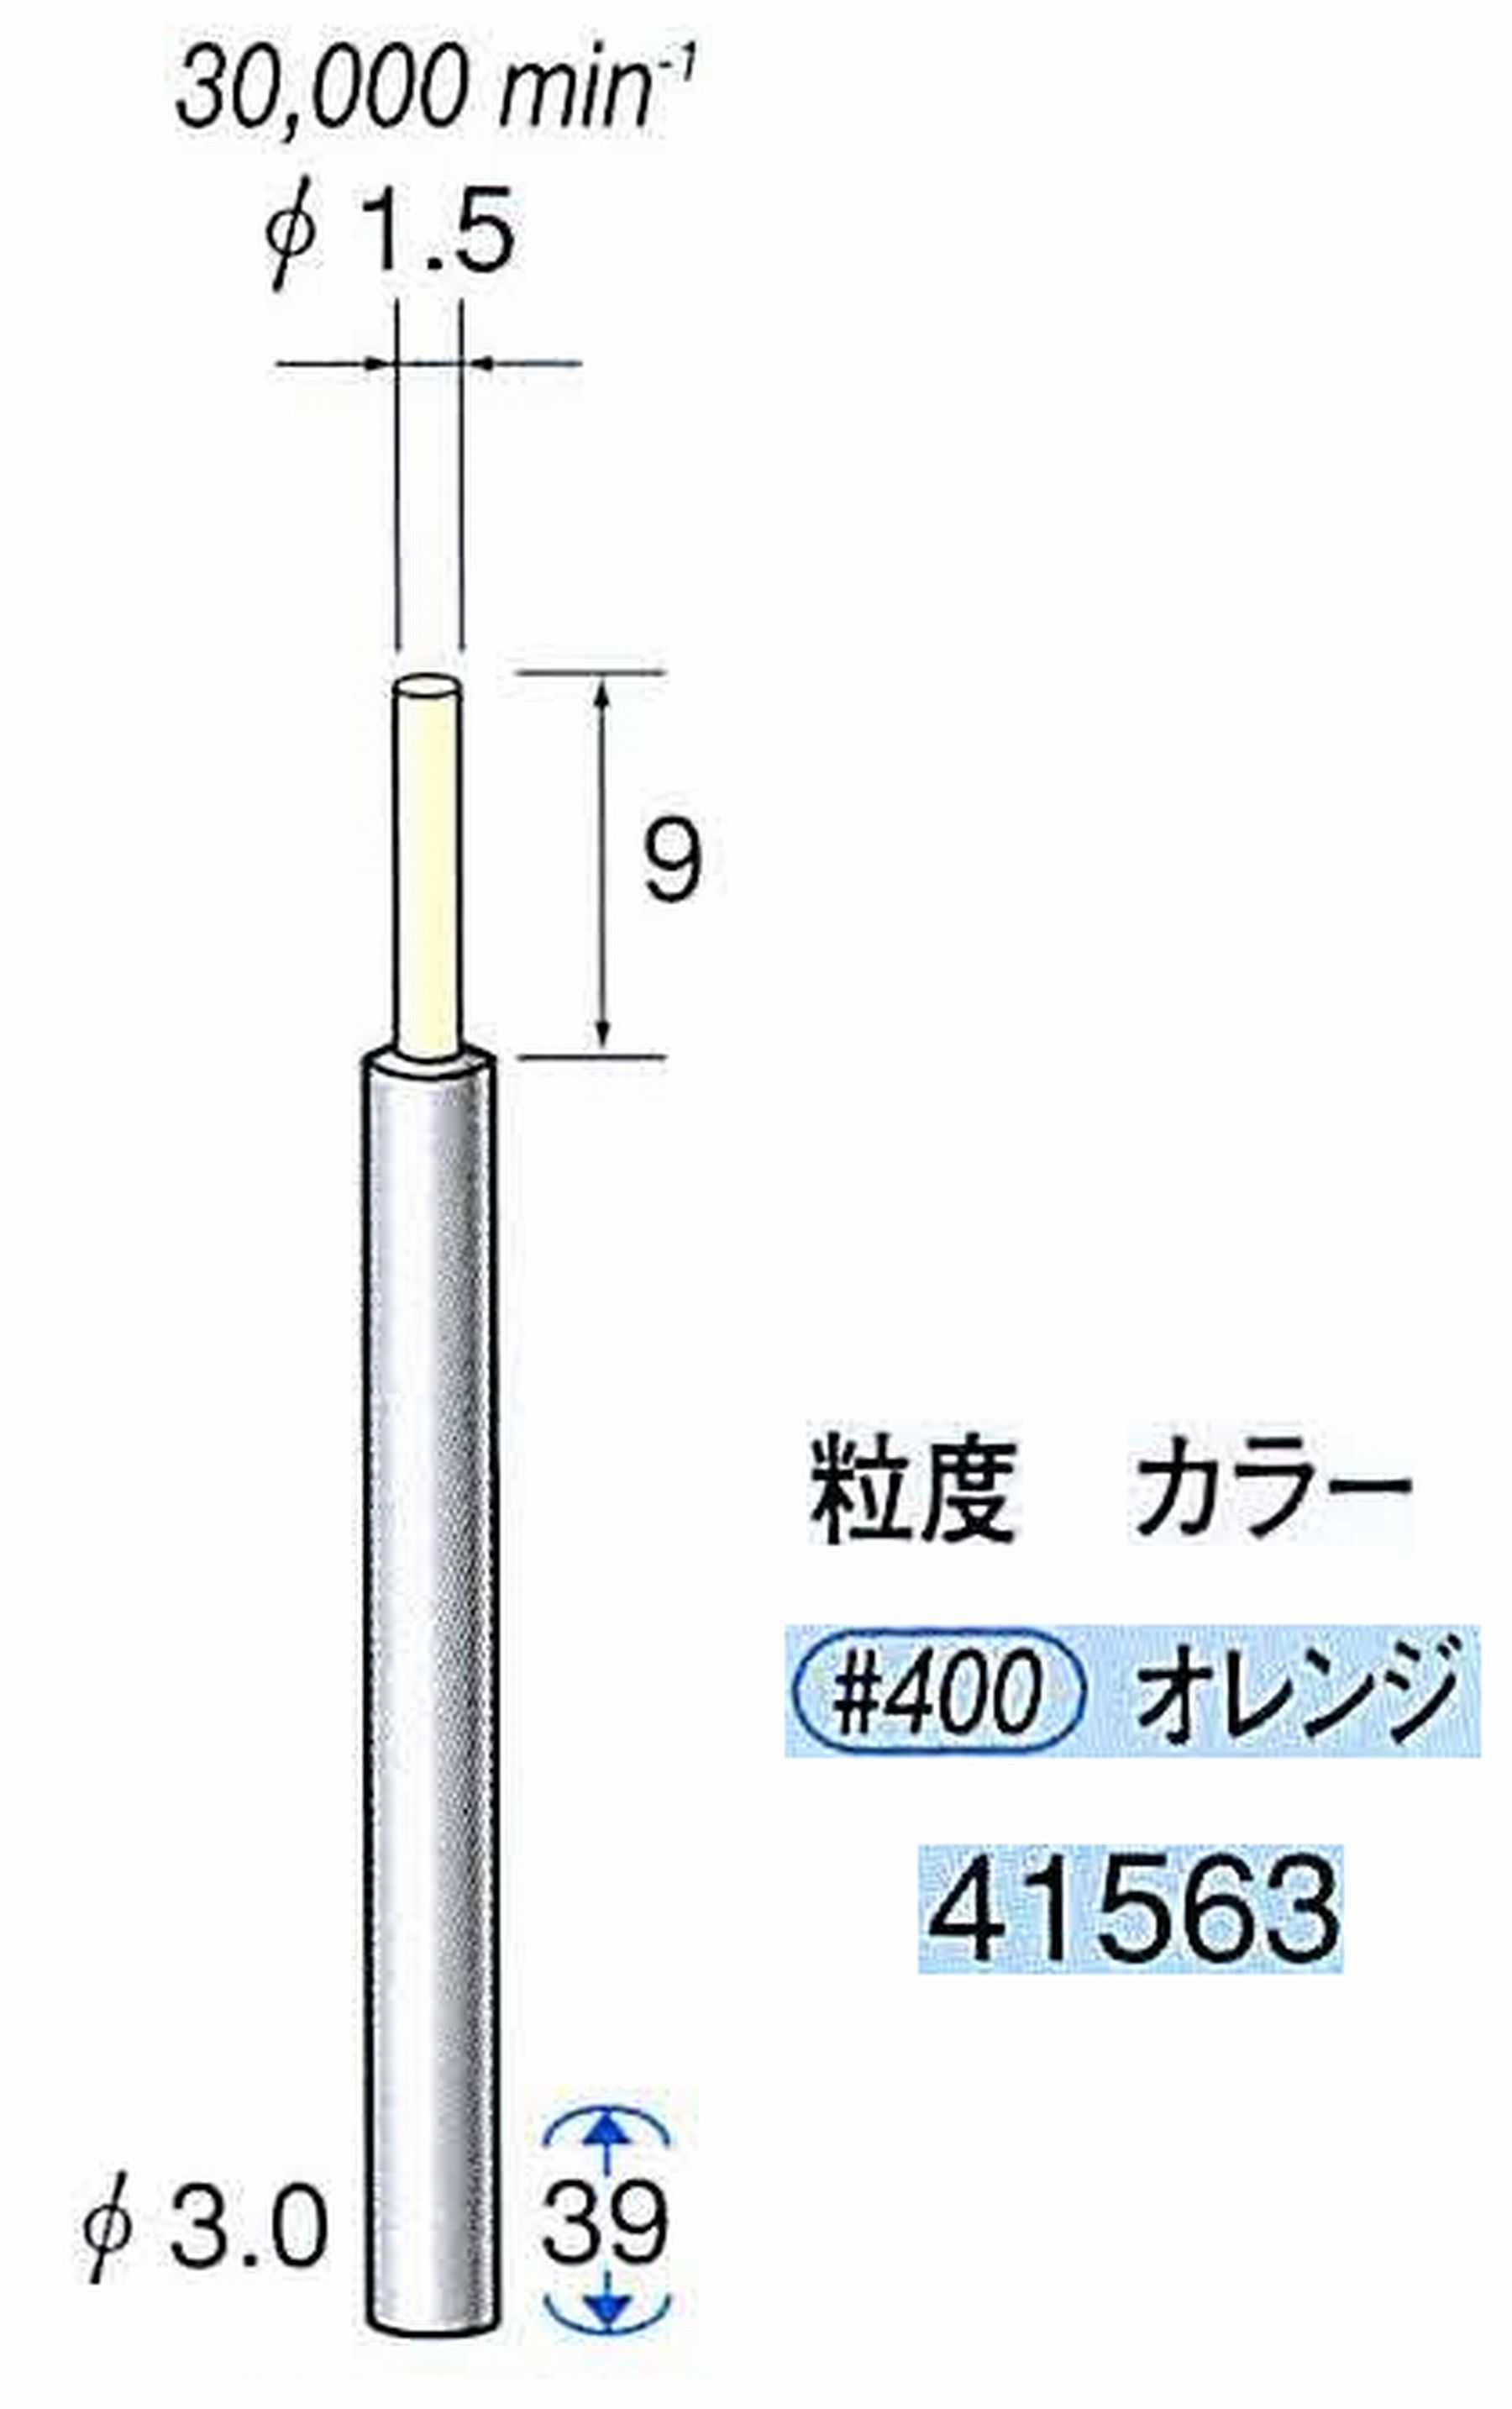 ナカニシ/NAKANISHI セラファイバー精密軸付砥石(カラー オレンジ) 軸径(シャンク) φ3.0mm 41563